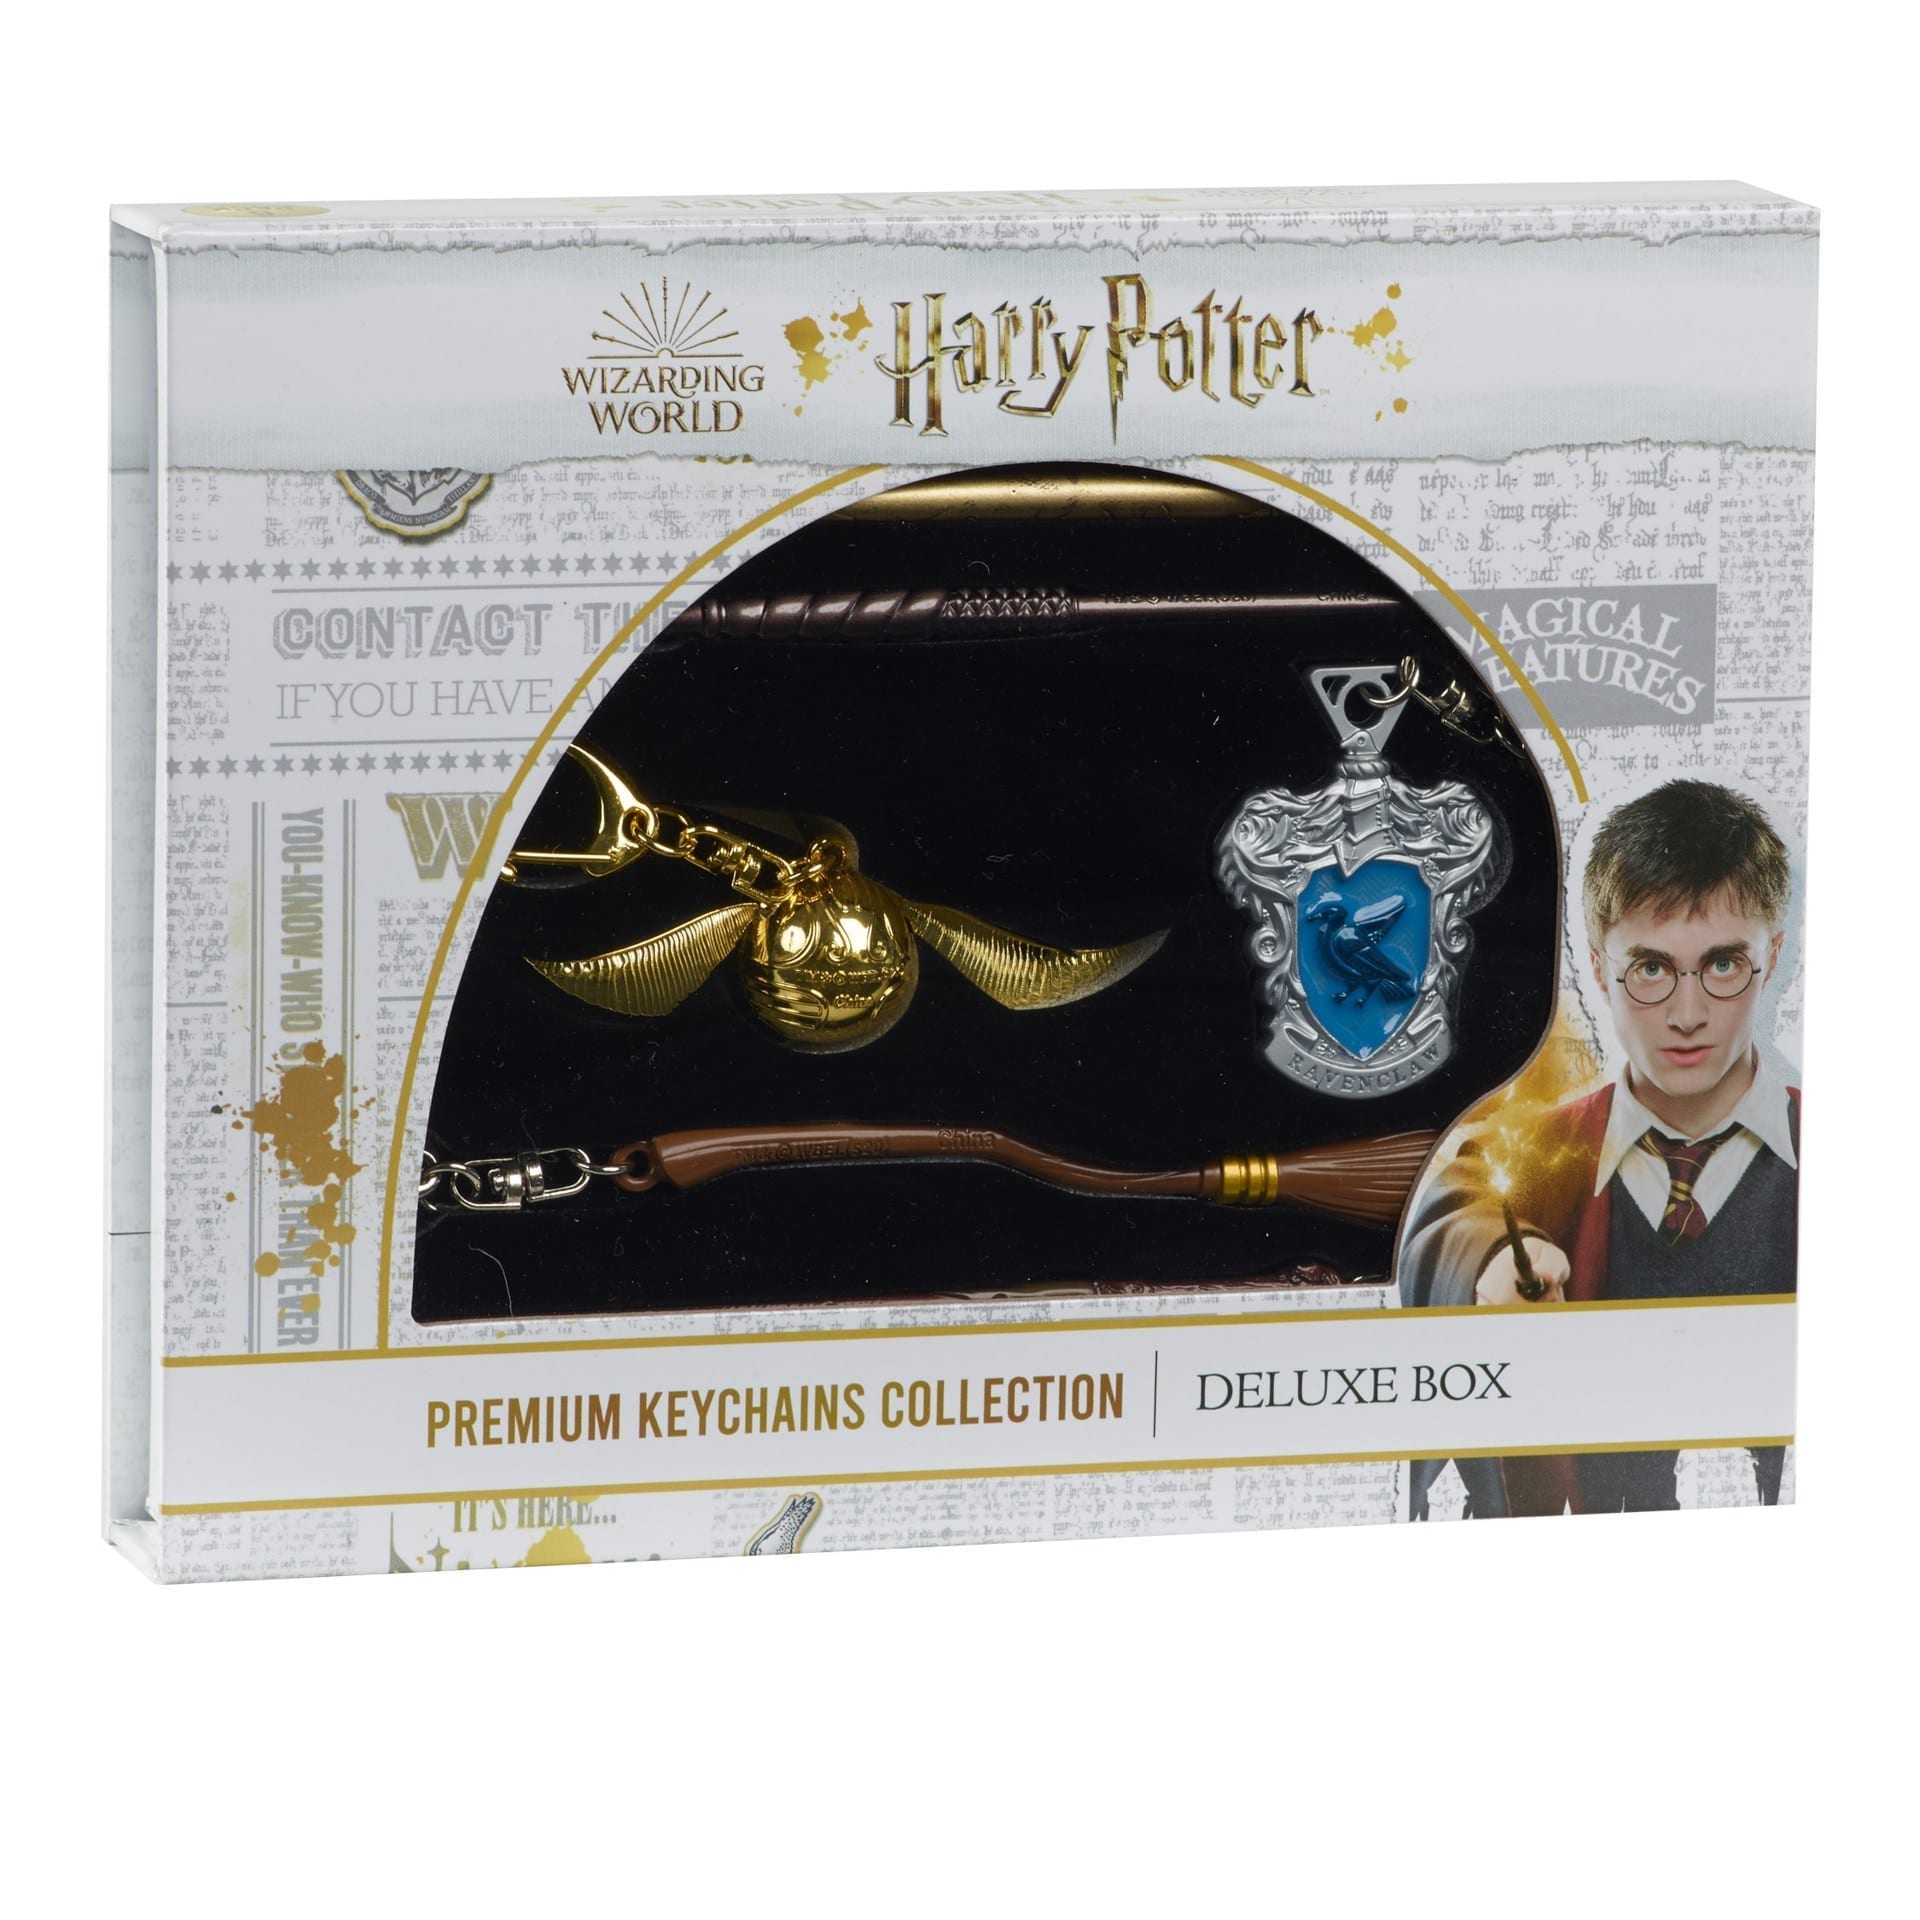 Harry potter merchandise